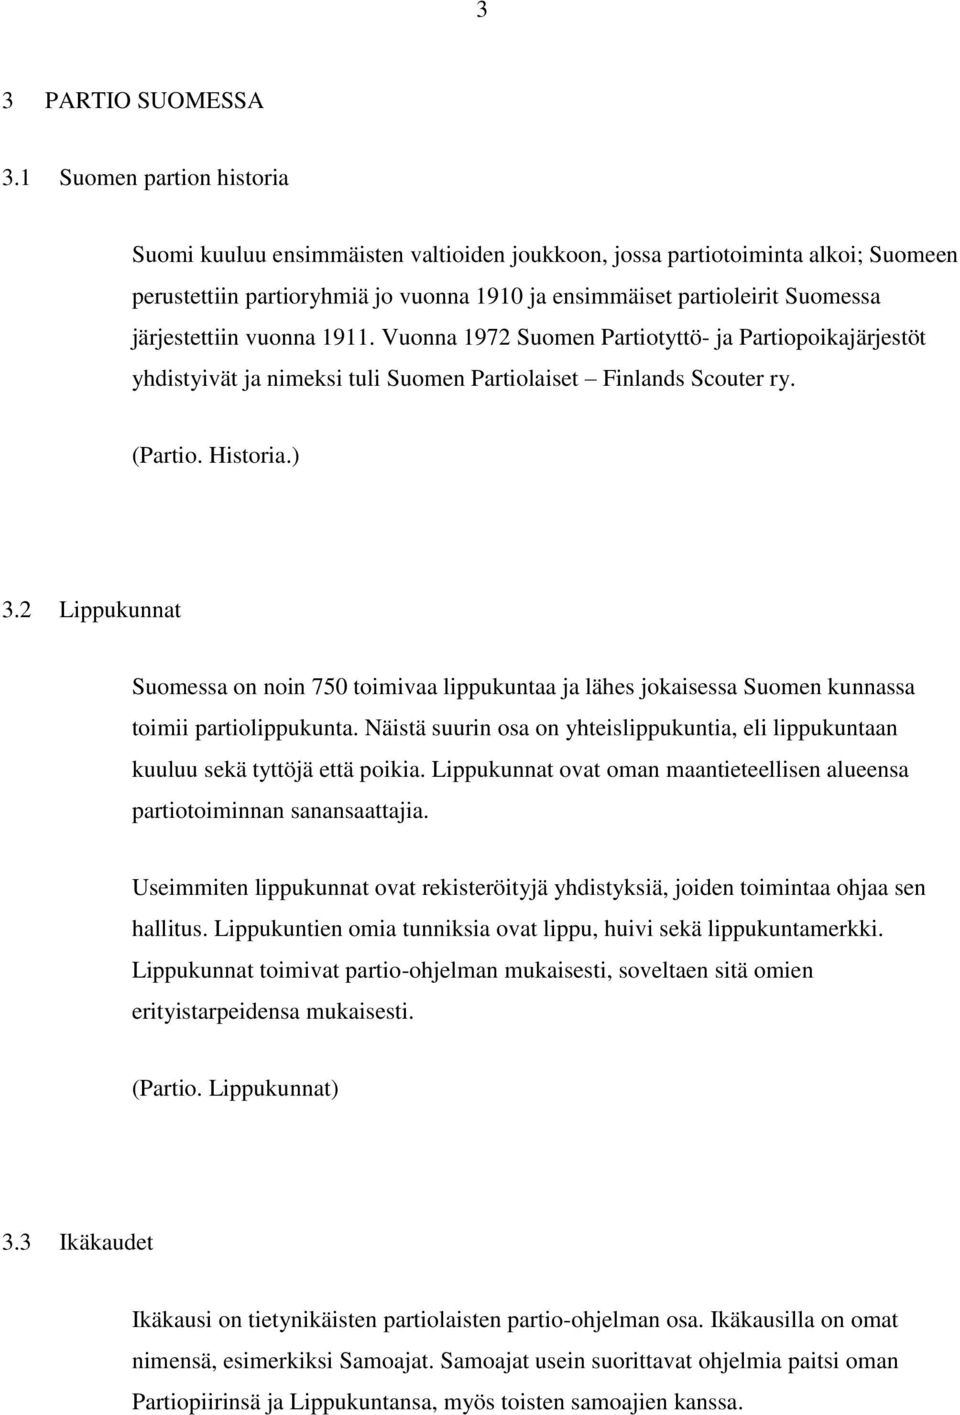 järjestettiin vuonna 1911. Vuonna 1972 Suomen Partiotyttö- ja Partiopoikajärjestöt yhdistyivät ja nimeksi tuli Suomen Partiolaiset Finlands Scouter ry. (Partio. Historia.) 3.